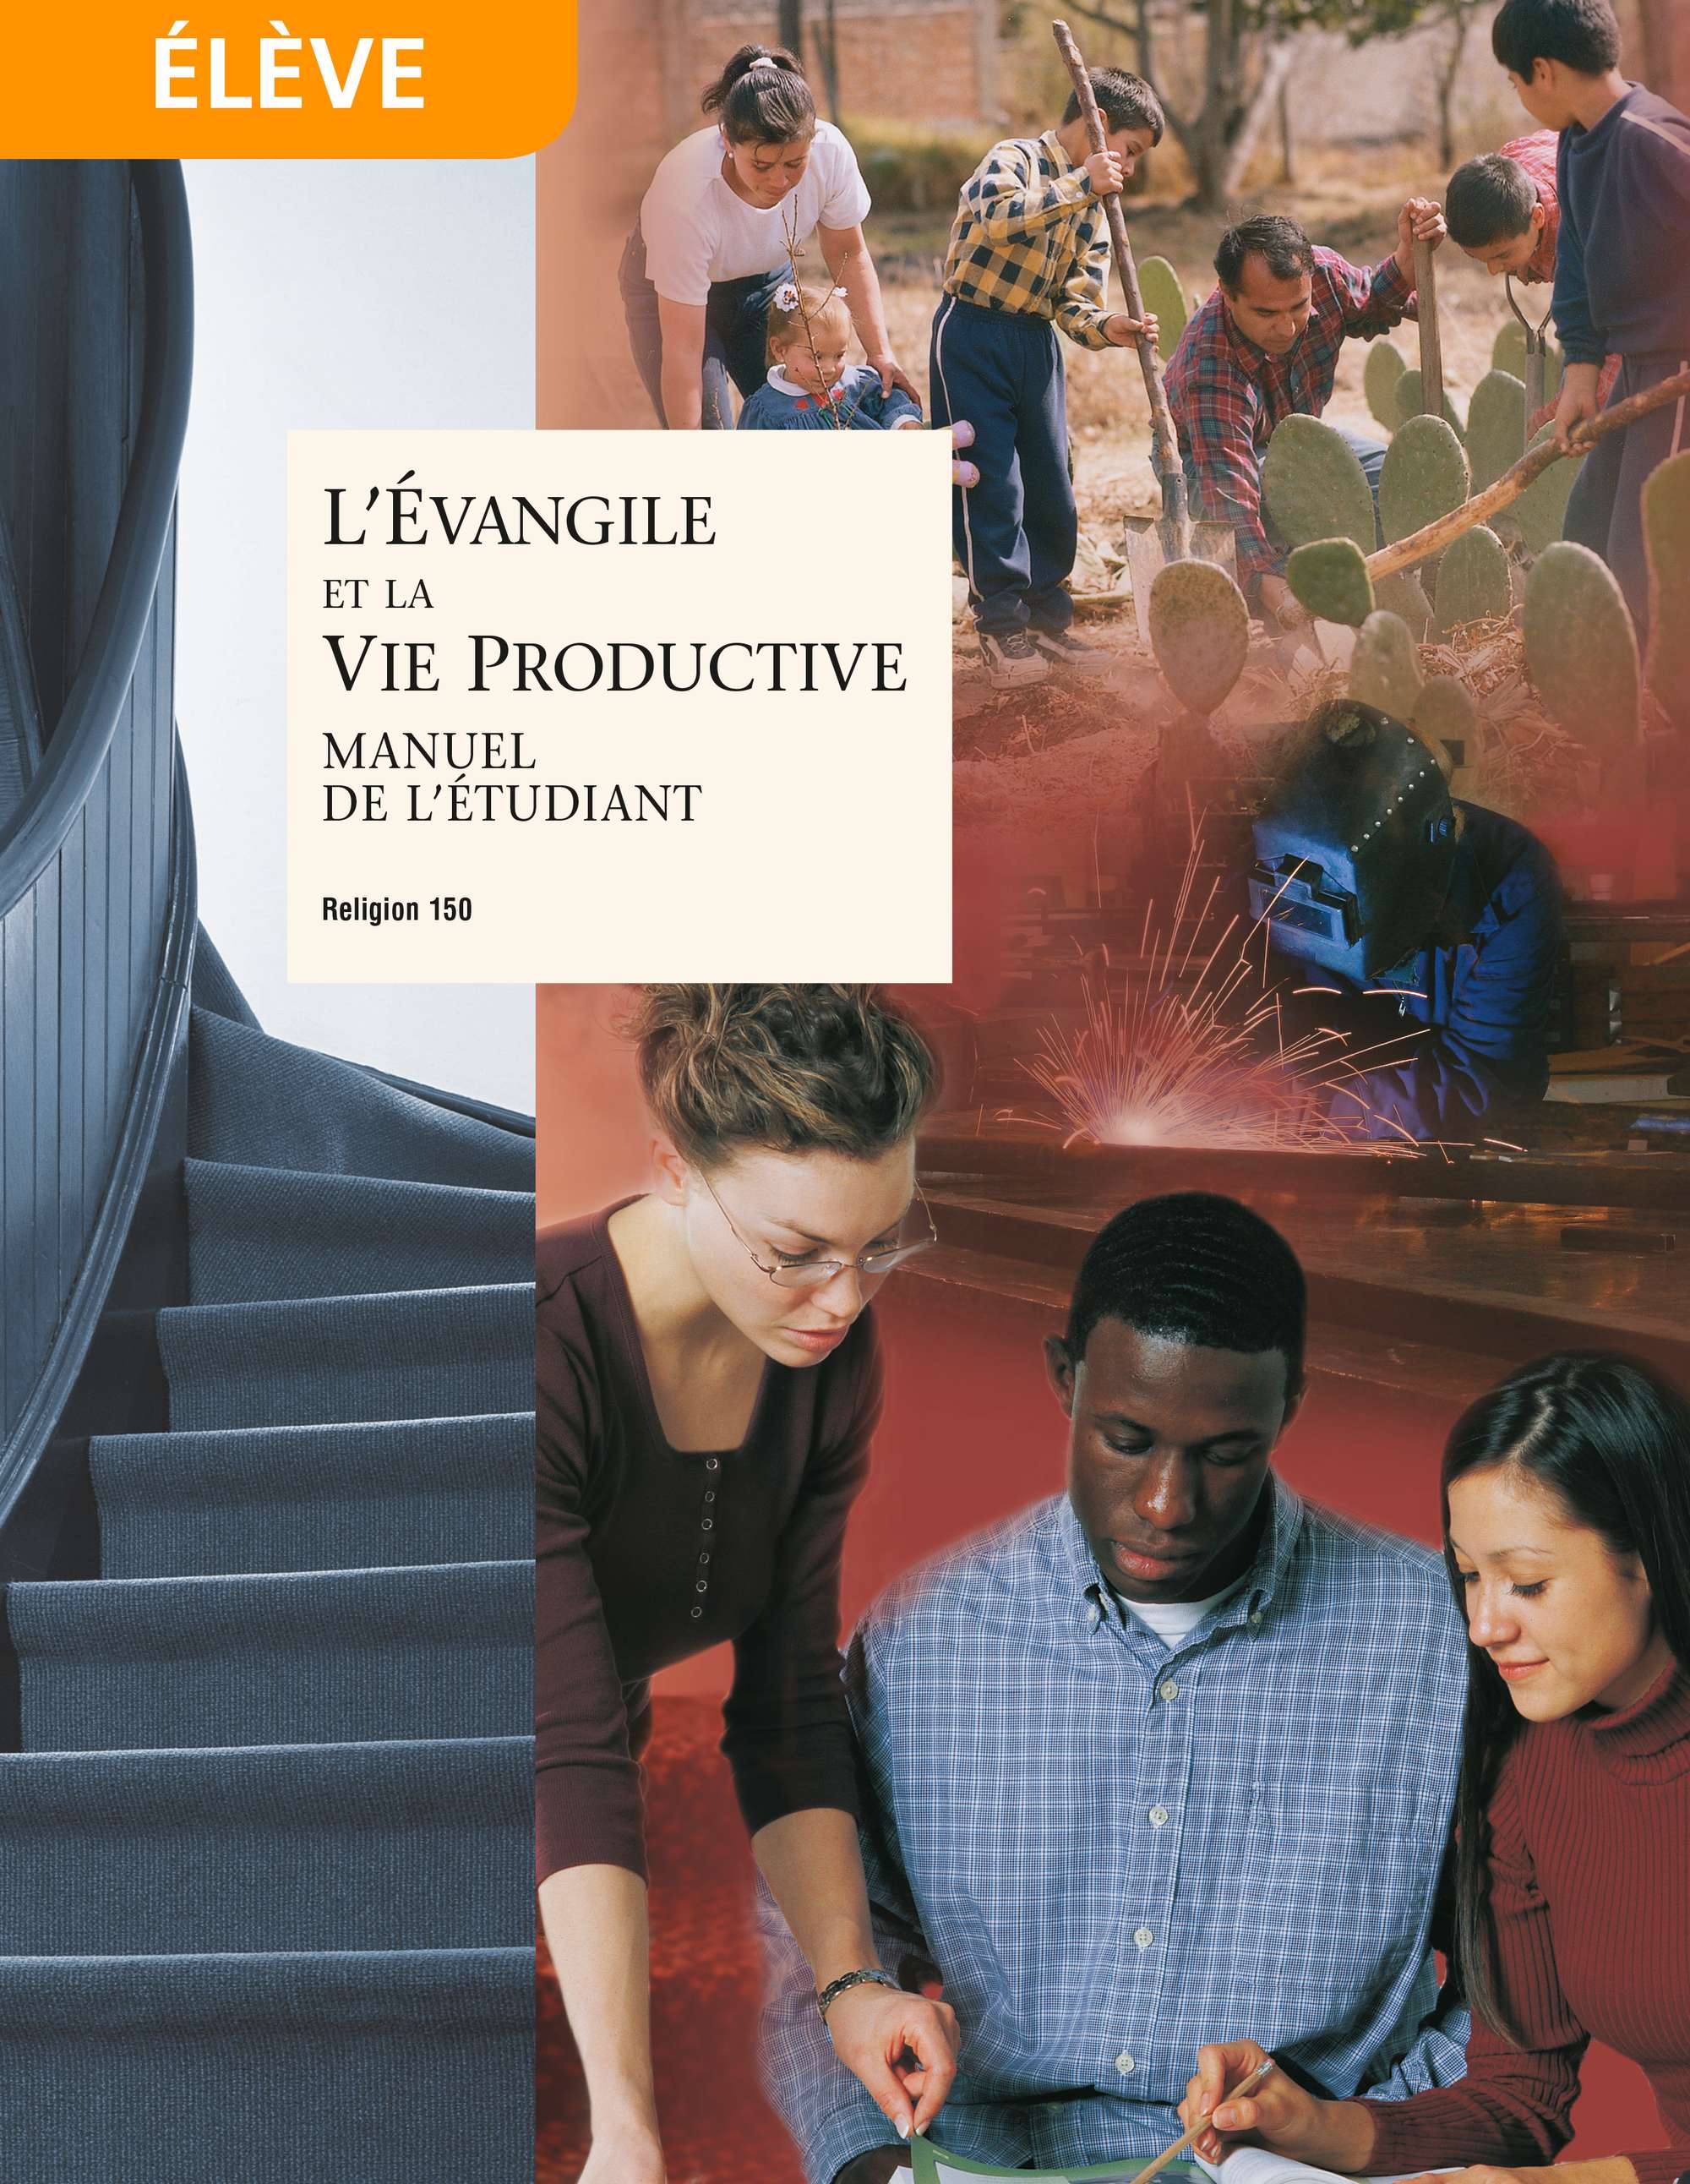 L’Évangile et la vie productive, manuel de l’étudiant (Religion 150)